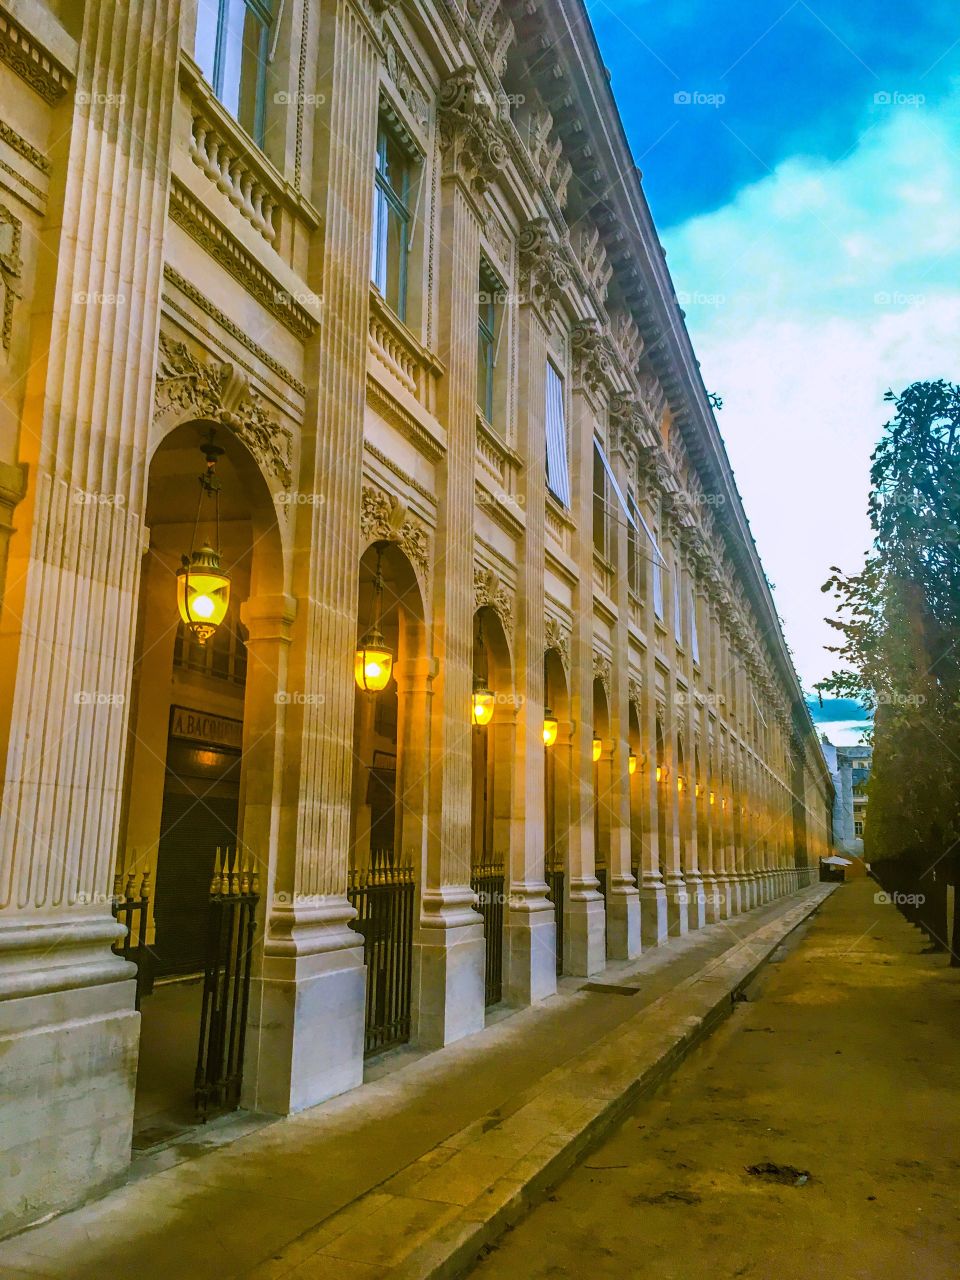 Royal palace Paris